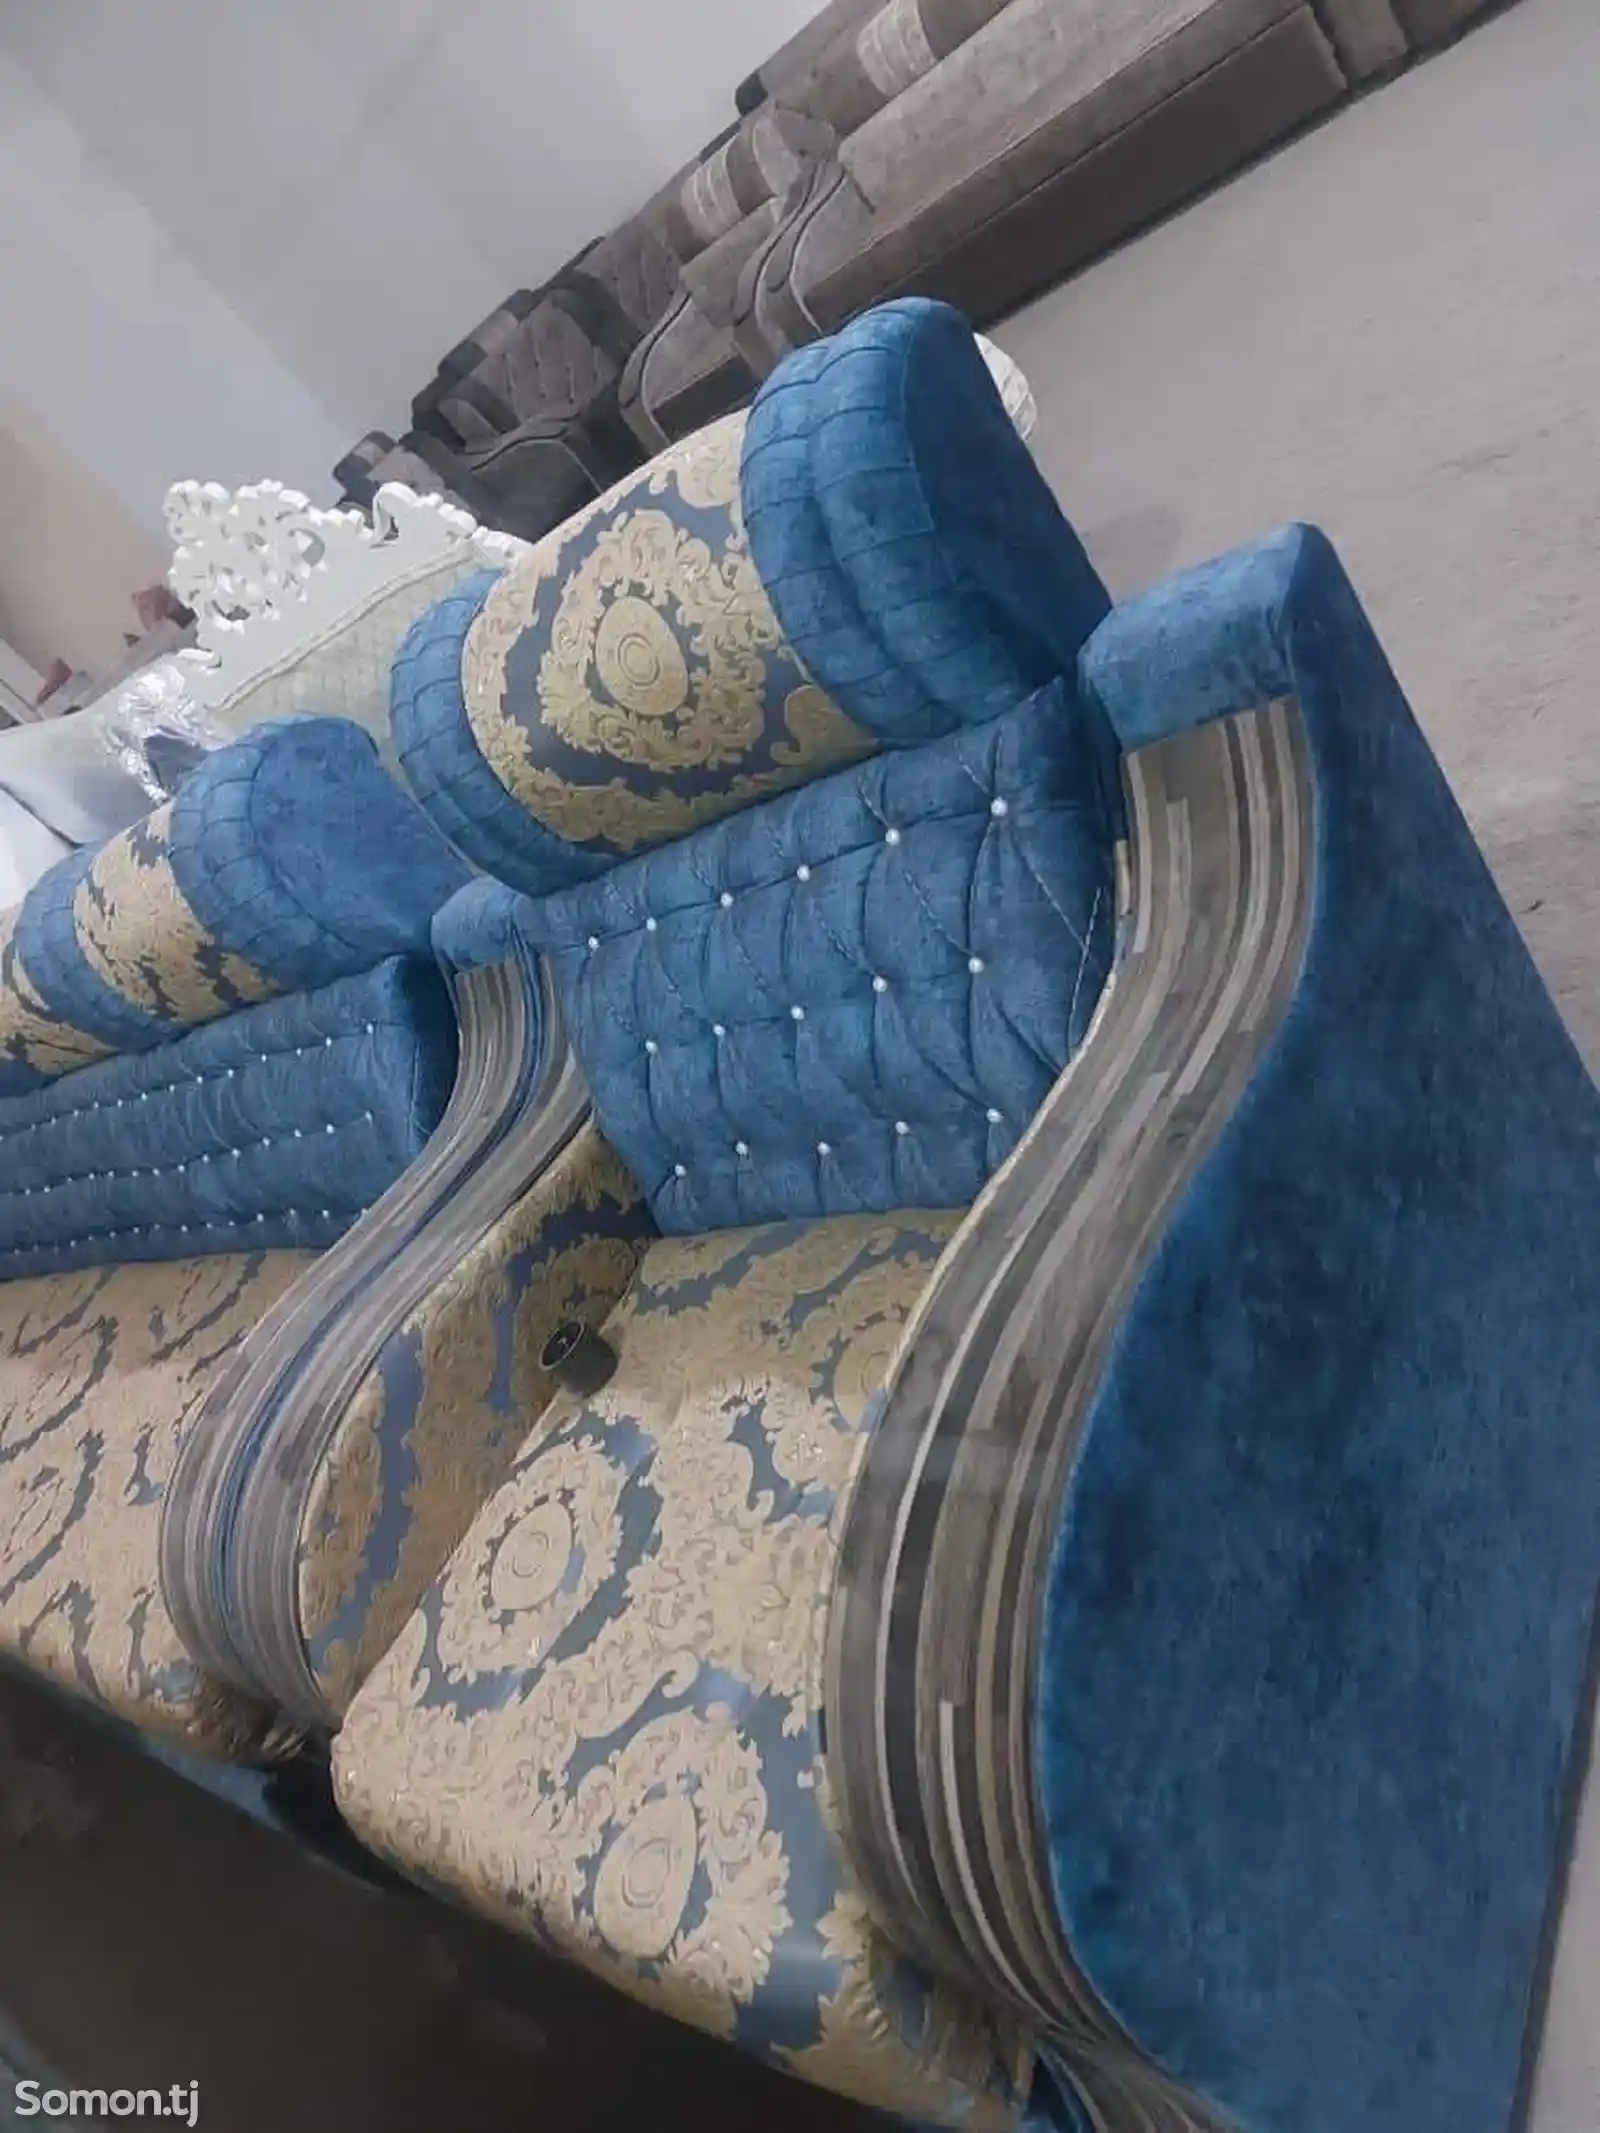 Раскладной диван с креслом